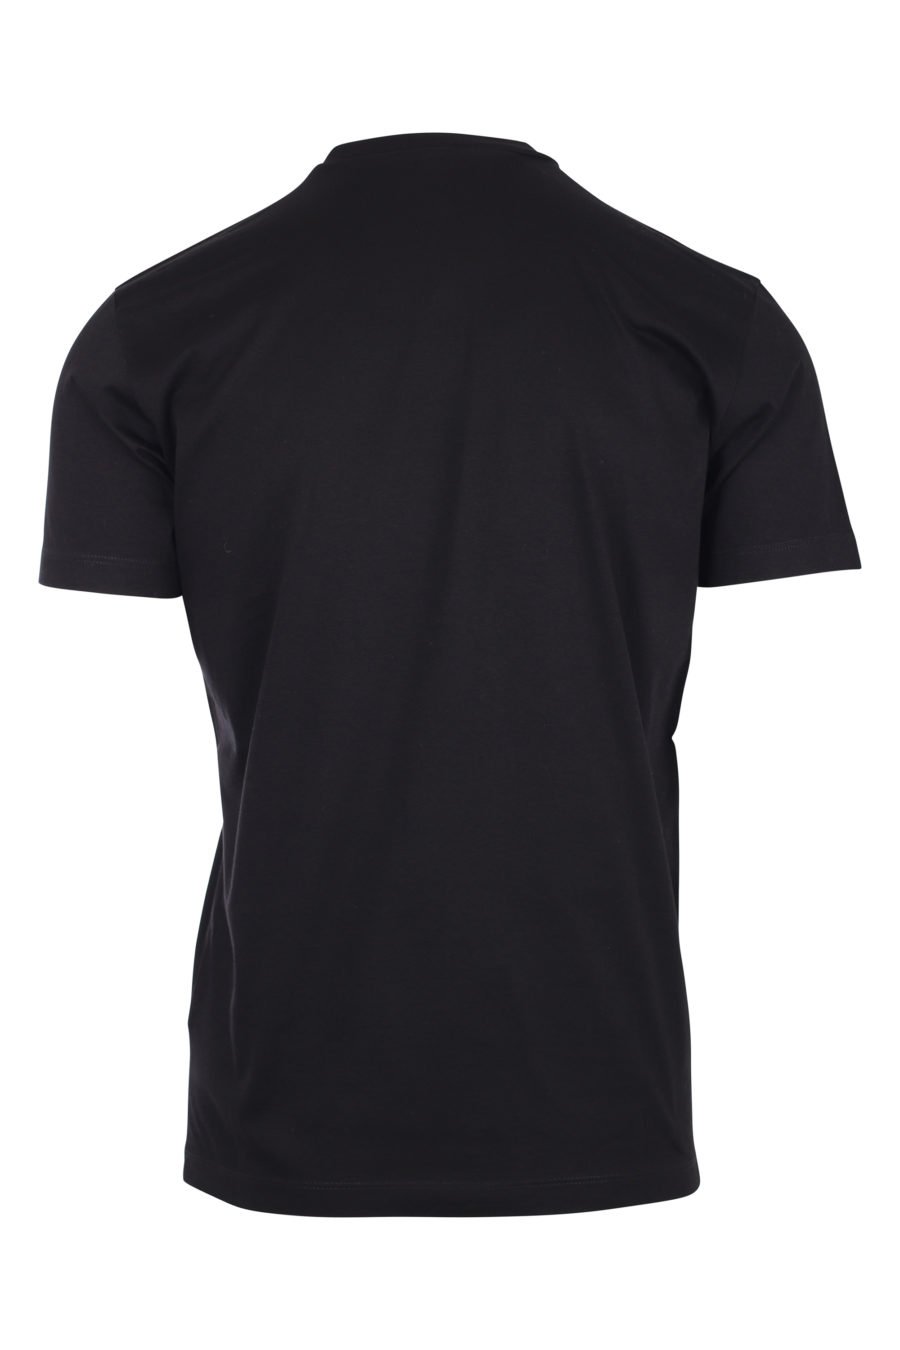 Camiseta negra con logo "icon" - IMG 9790